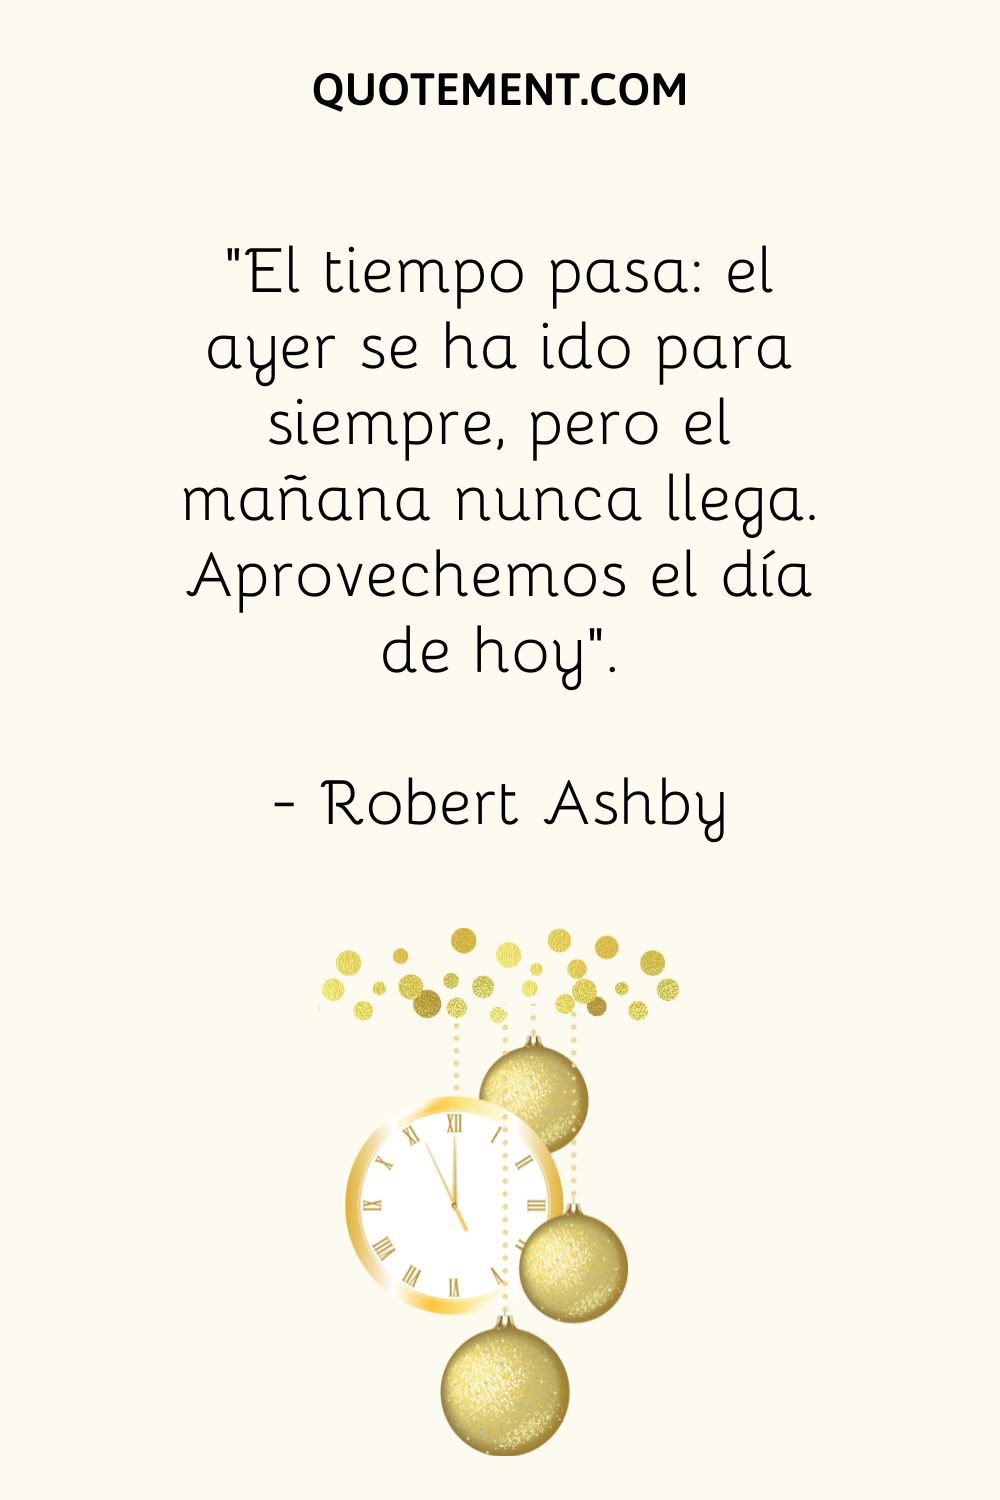 "El tiempo pasa Ayer se fue para siempre, pero mañana nunca llega. Aprovechemos el hoy". - Robert Ashby